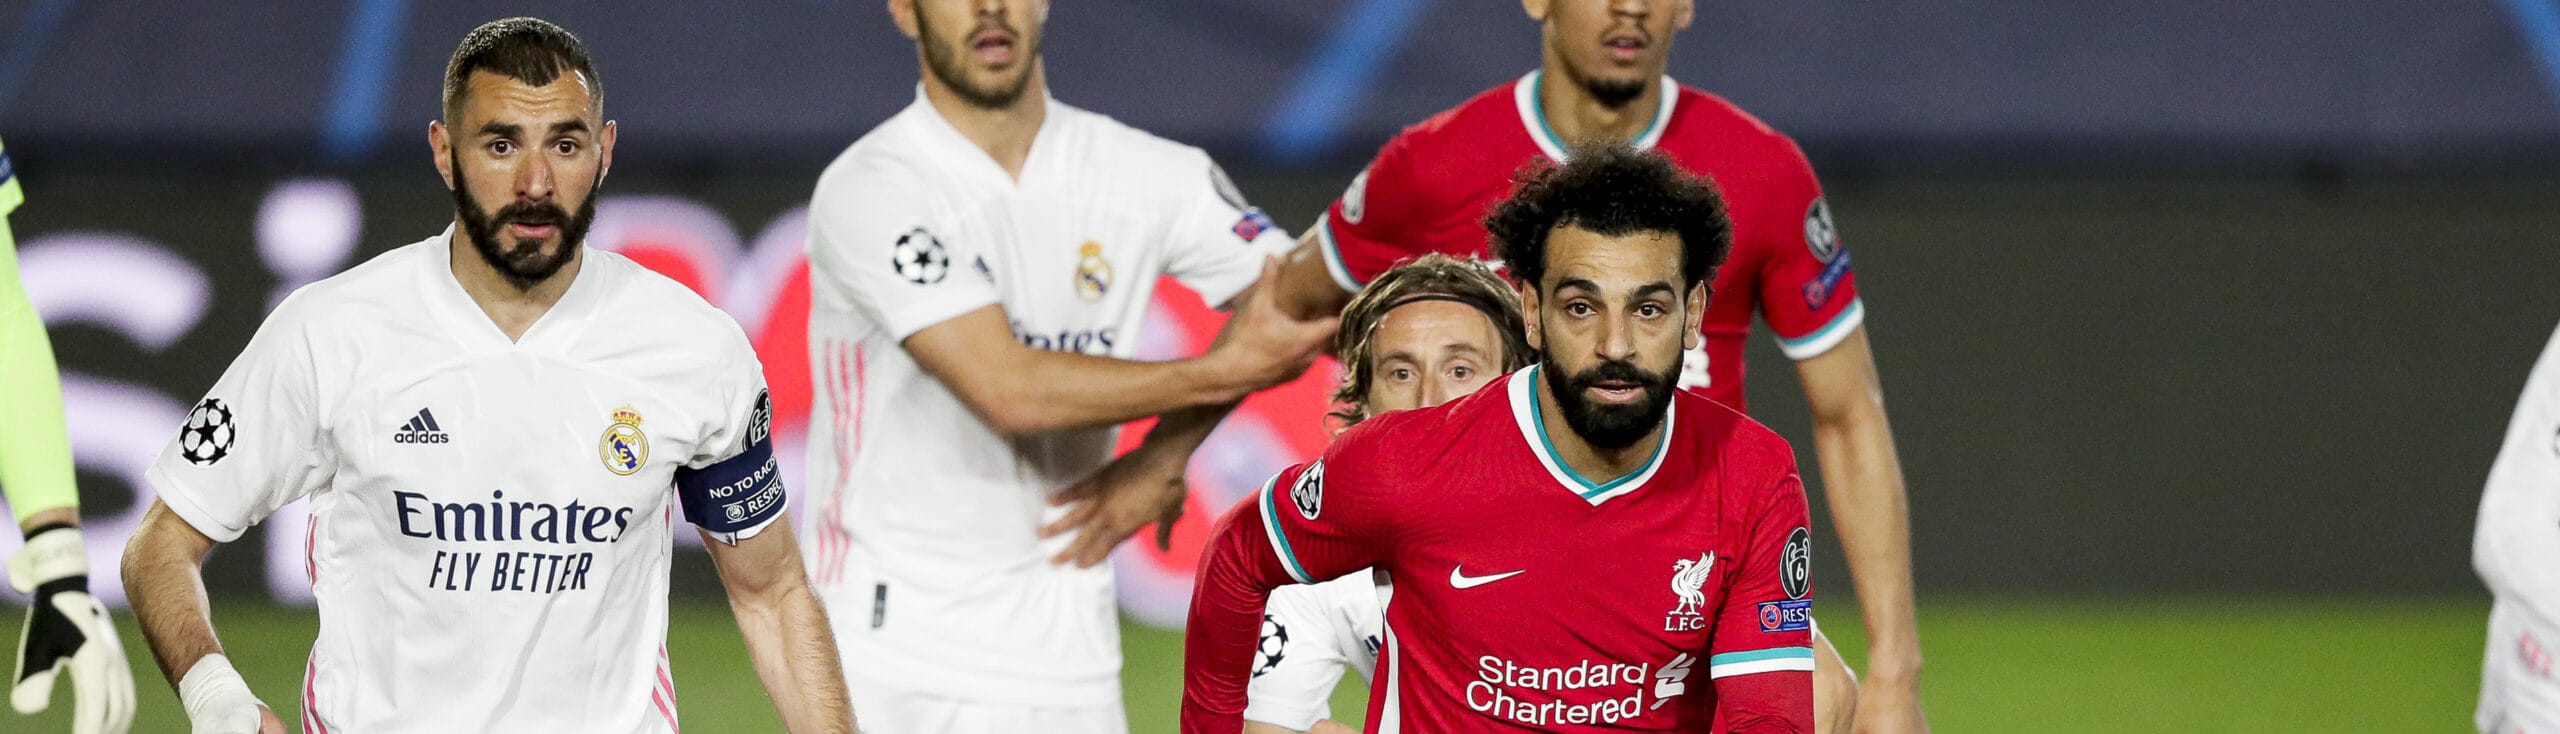 Liverpool-Real Madrid, i Reds si preparano all'assalto: rimonta possibile?